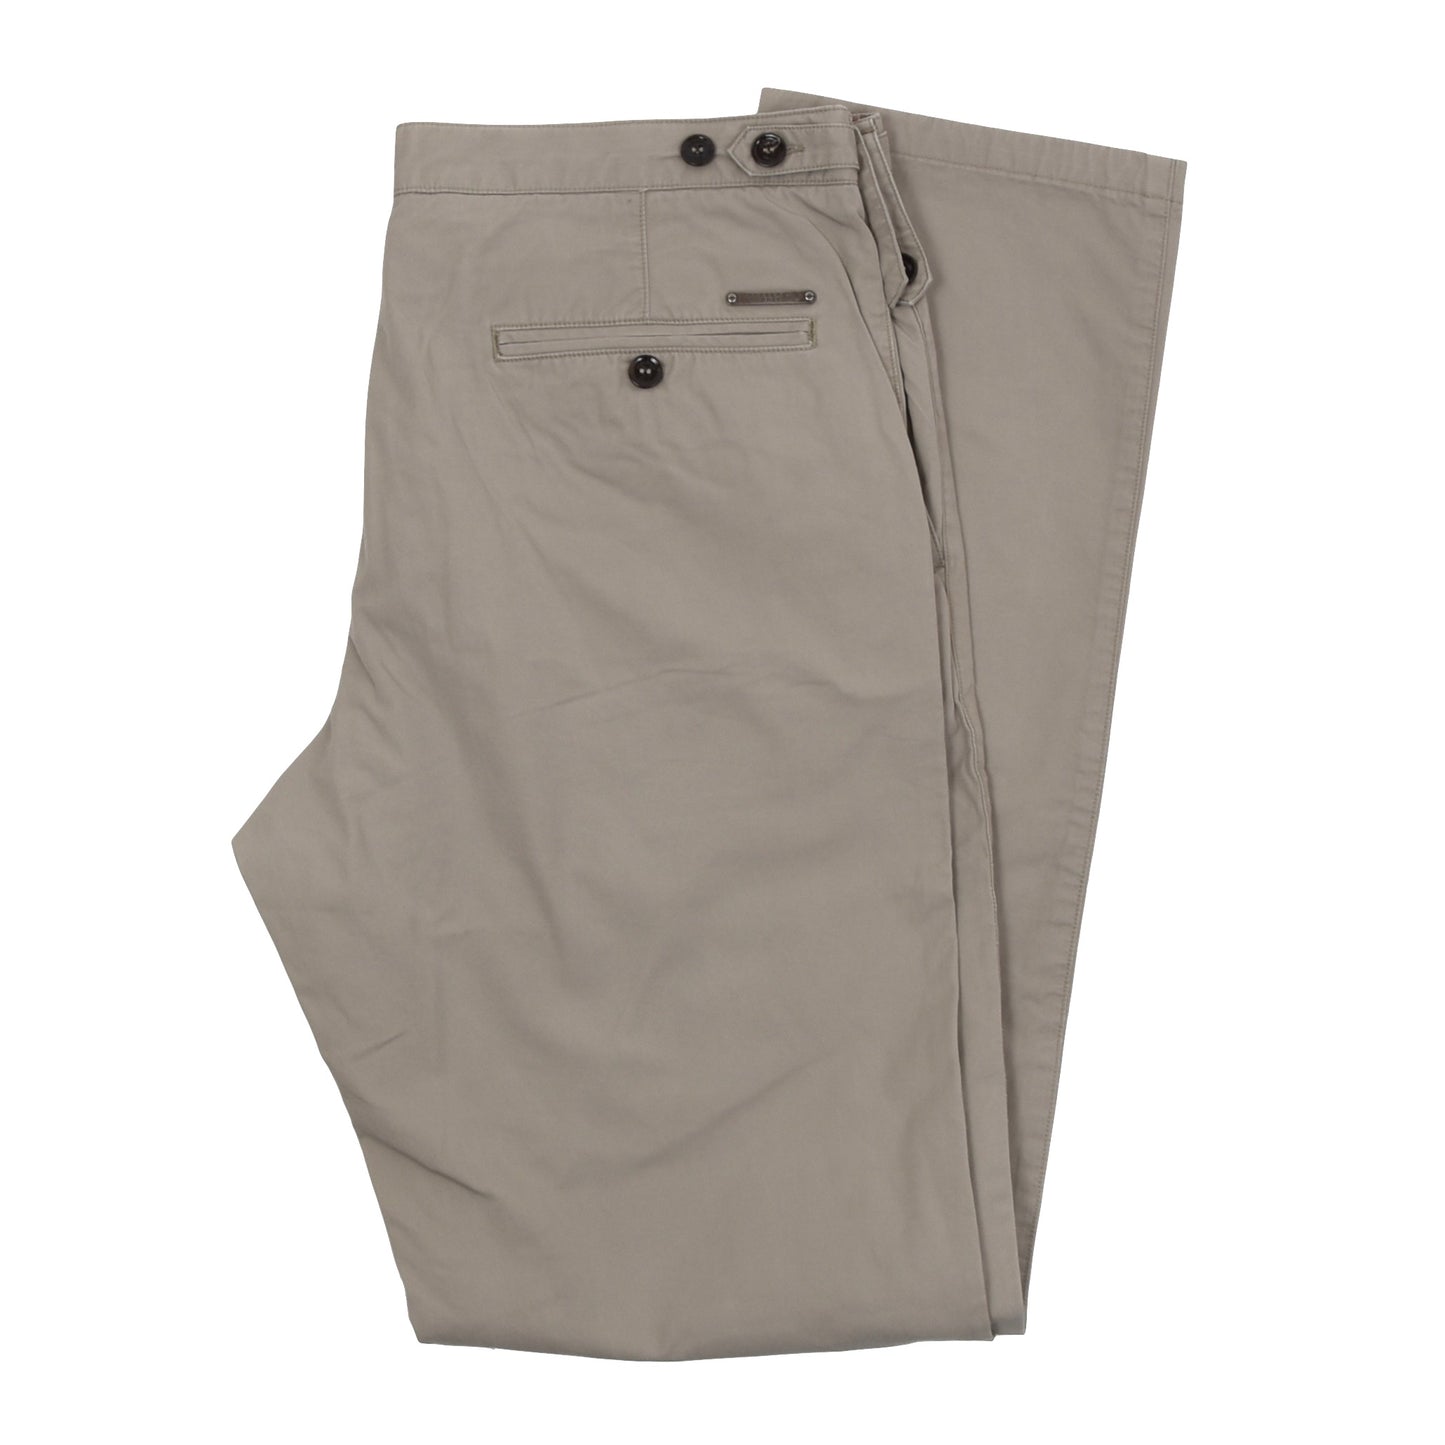 Burberry Brit Cotton Pants Size 34L - Taupe